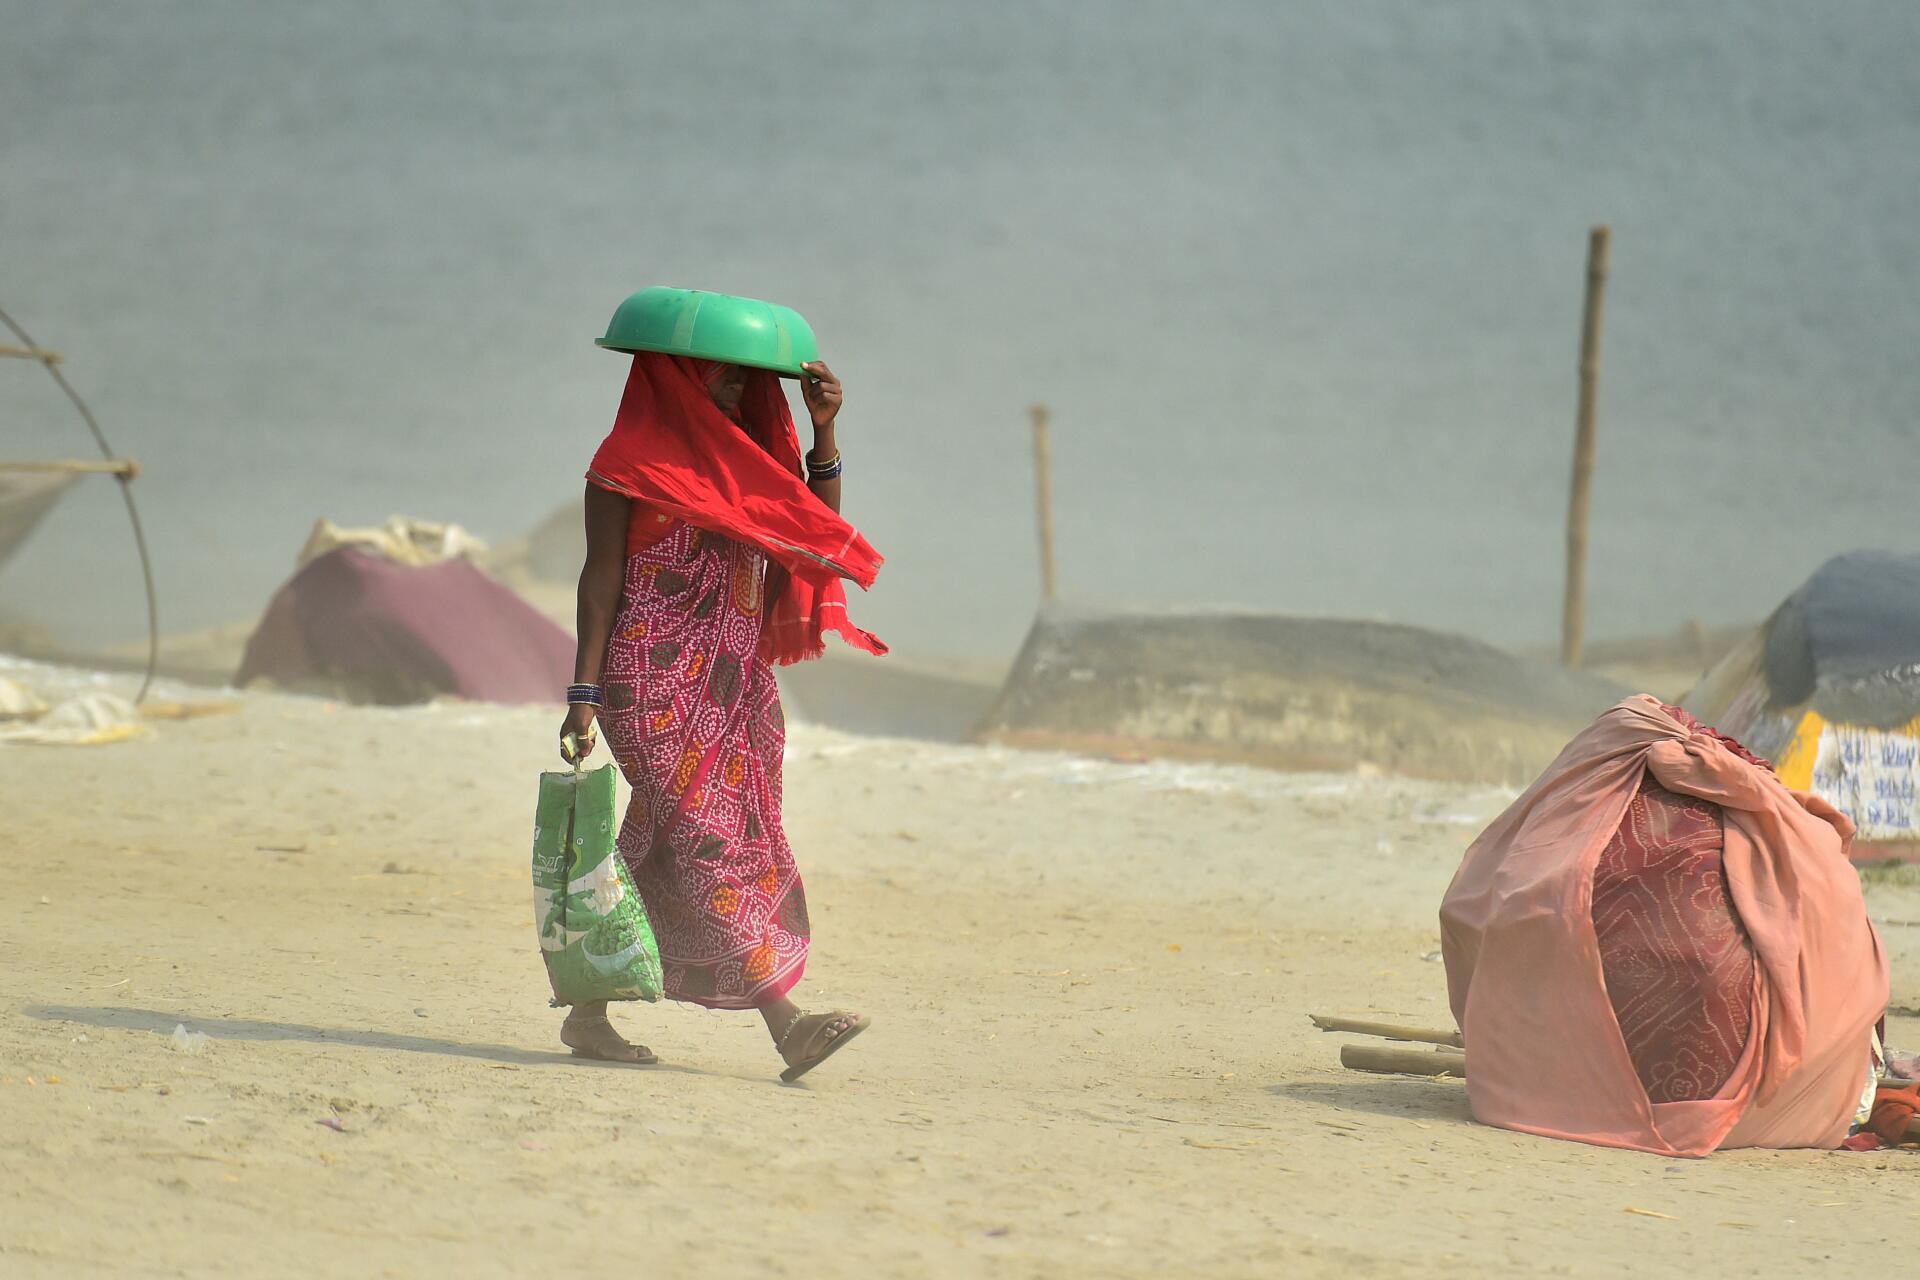 El 30 de abril de 2022, en Allahabad, una mujer se cubrió la cabeza con una bolsa de plástico mientras caminaba cerca de la confluencia de los ríos Ganges, Yamuna y Purana Saraswati.